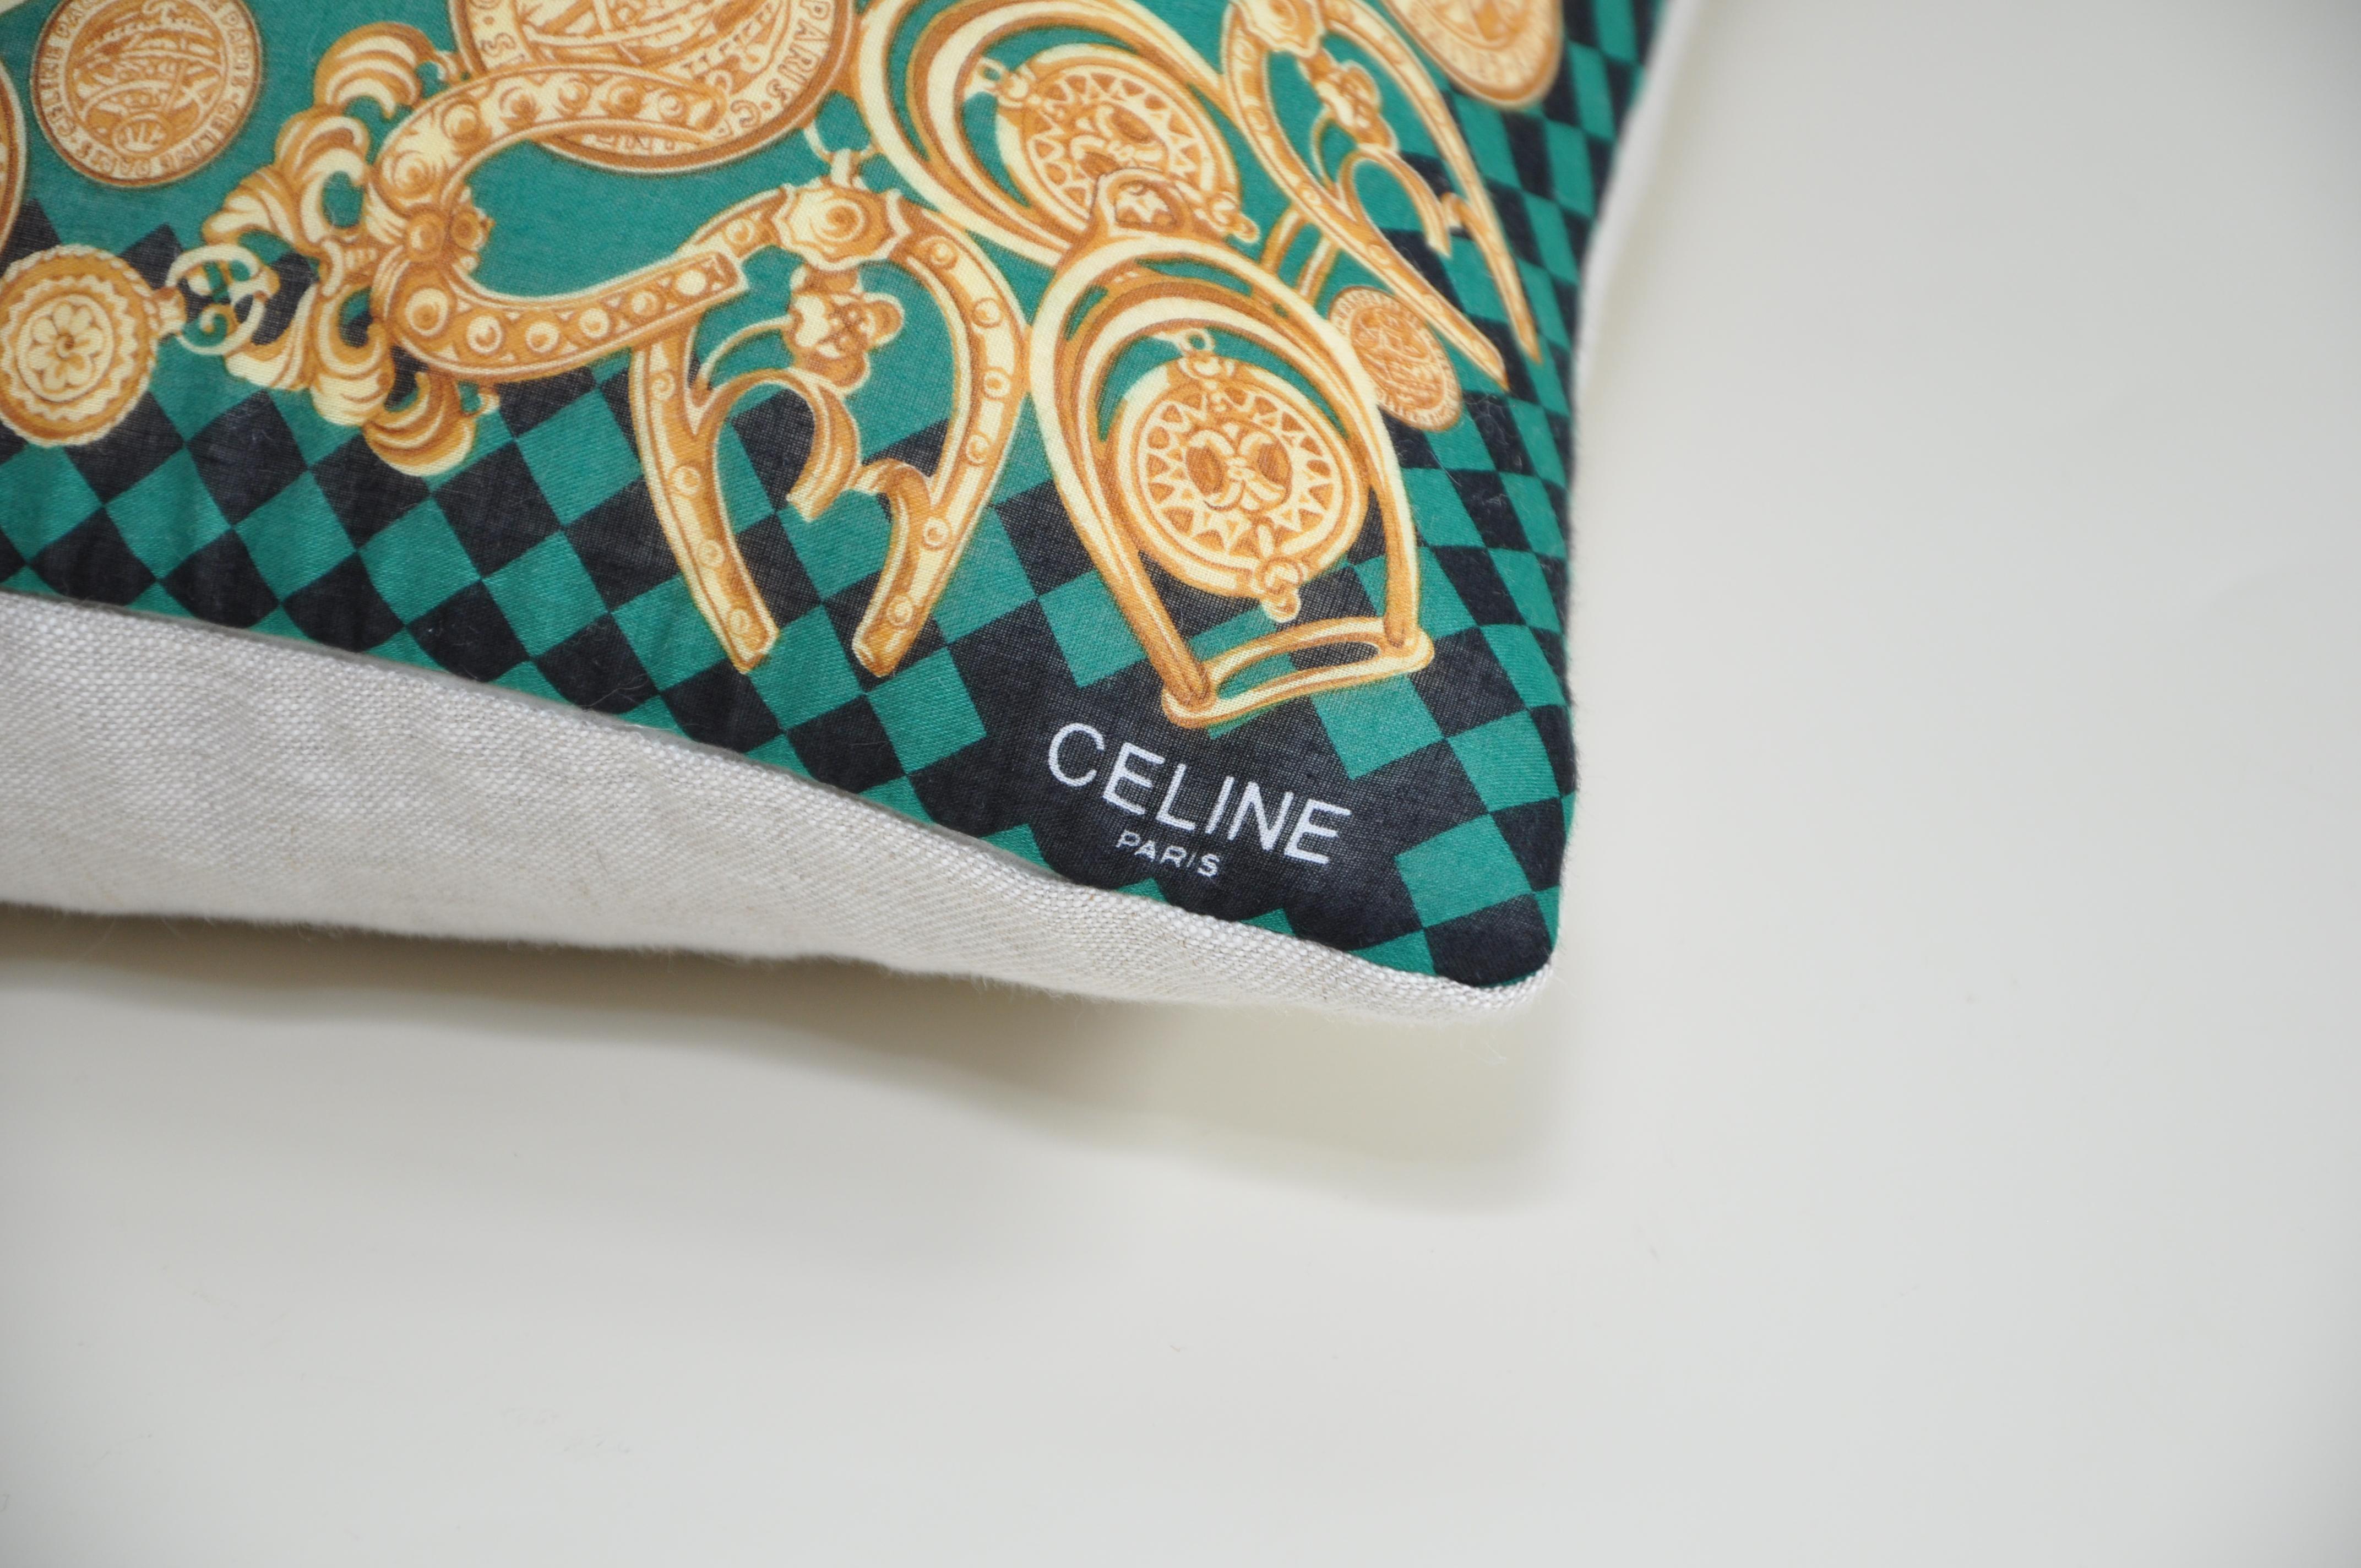 Titel:
Katie Larmour Vintage Celine Schal in reinen irischen Leinen Kissen Kissen grün gold zurückgegeben

Beschreibung:
Dieses Schmuckstück ist ein einzigartiges, maßgefertigtes Luxuskissen aus einem exquisiten, alten Celine-Schal mit einem